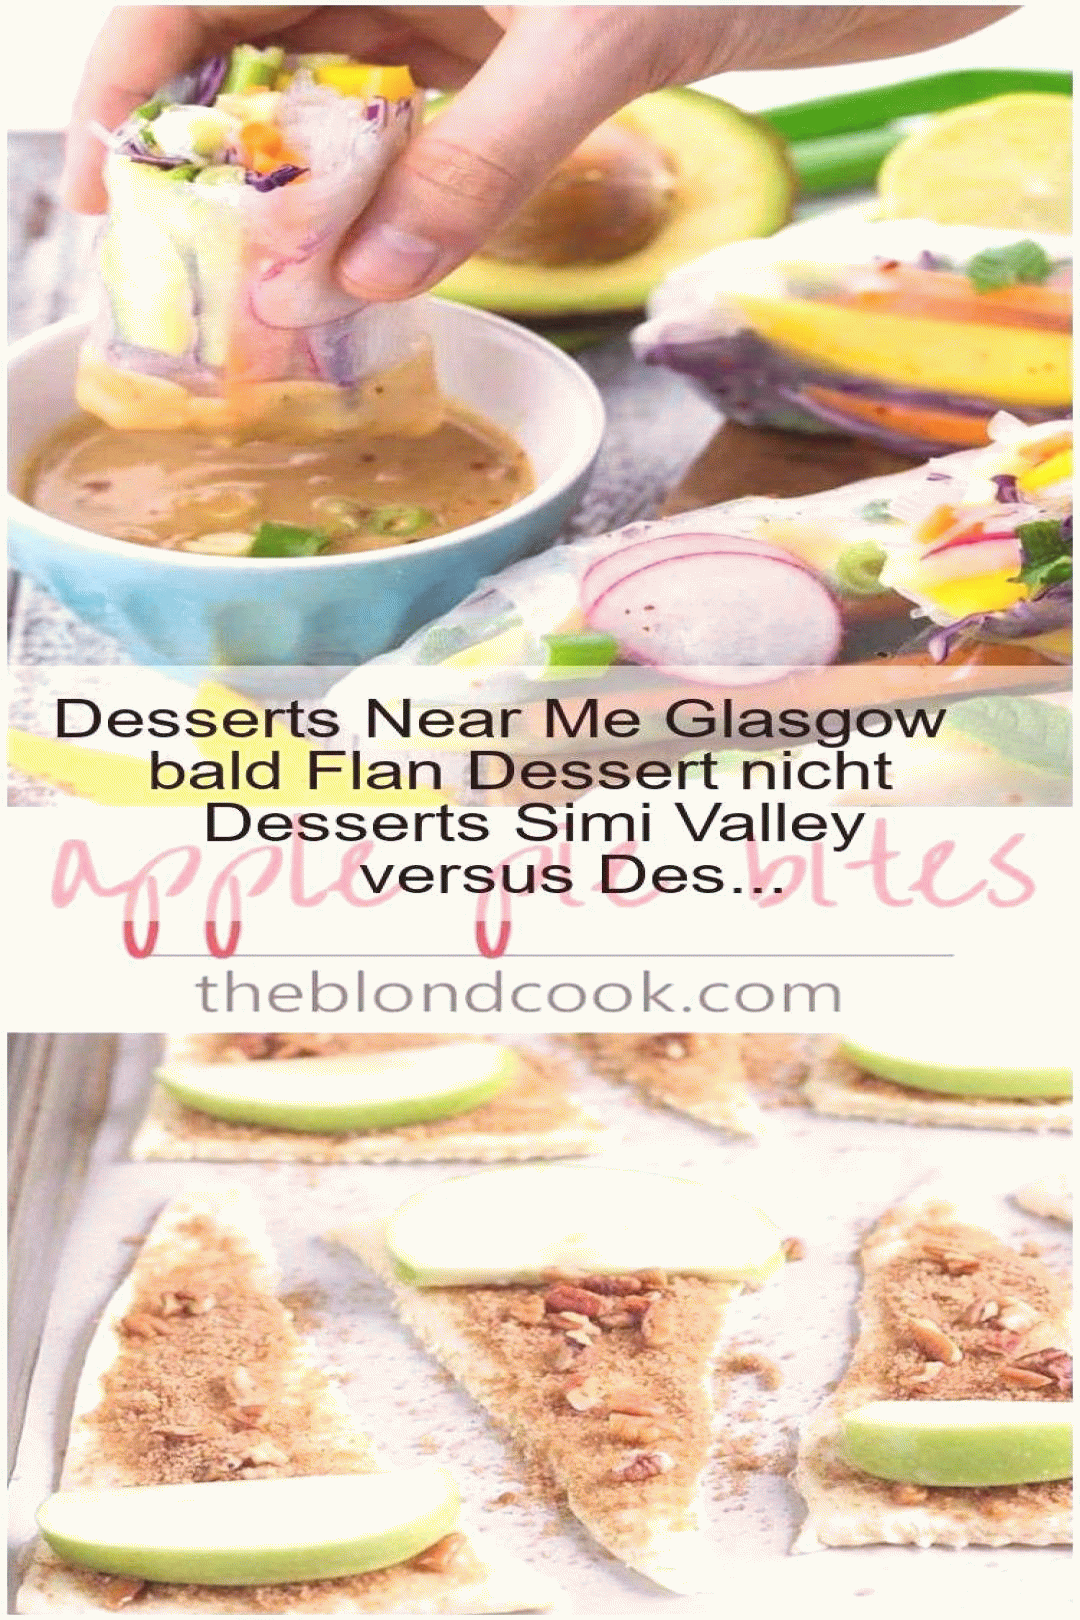 desserts near me glasgow bald flan dessert nicht simi valley versus des cookie recipes gif